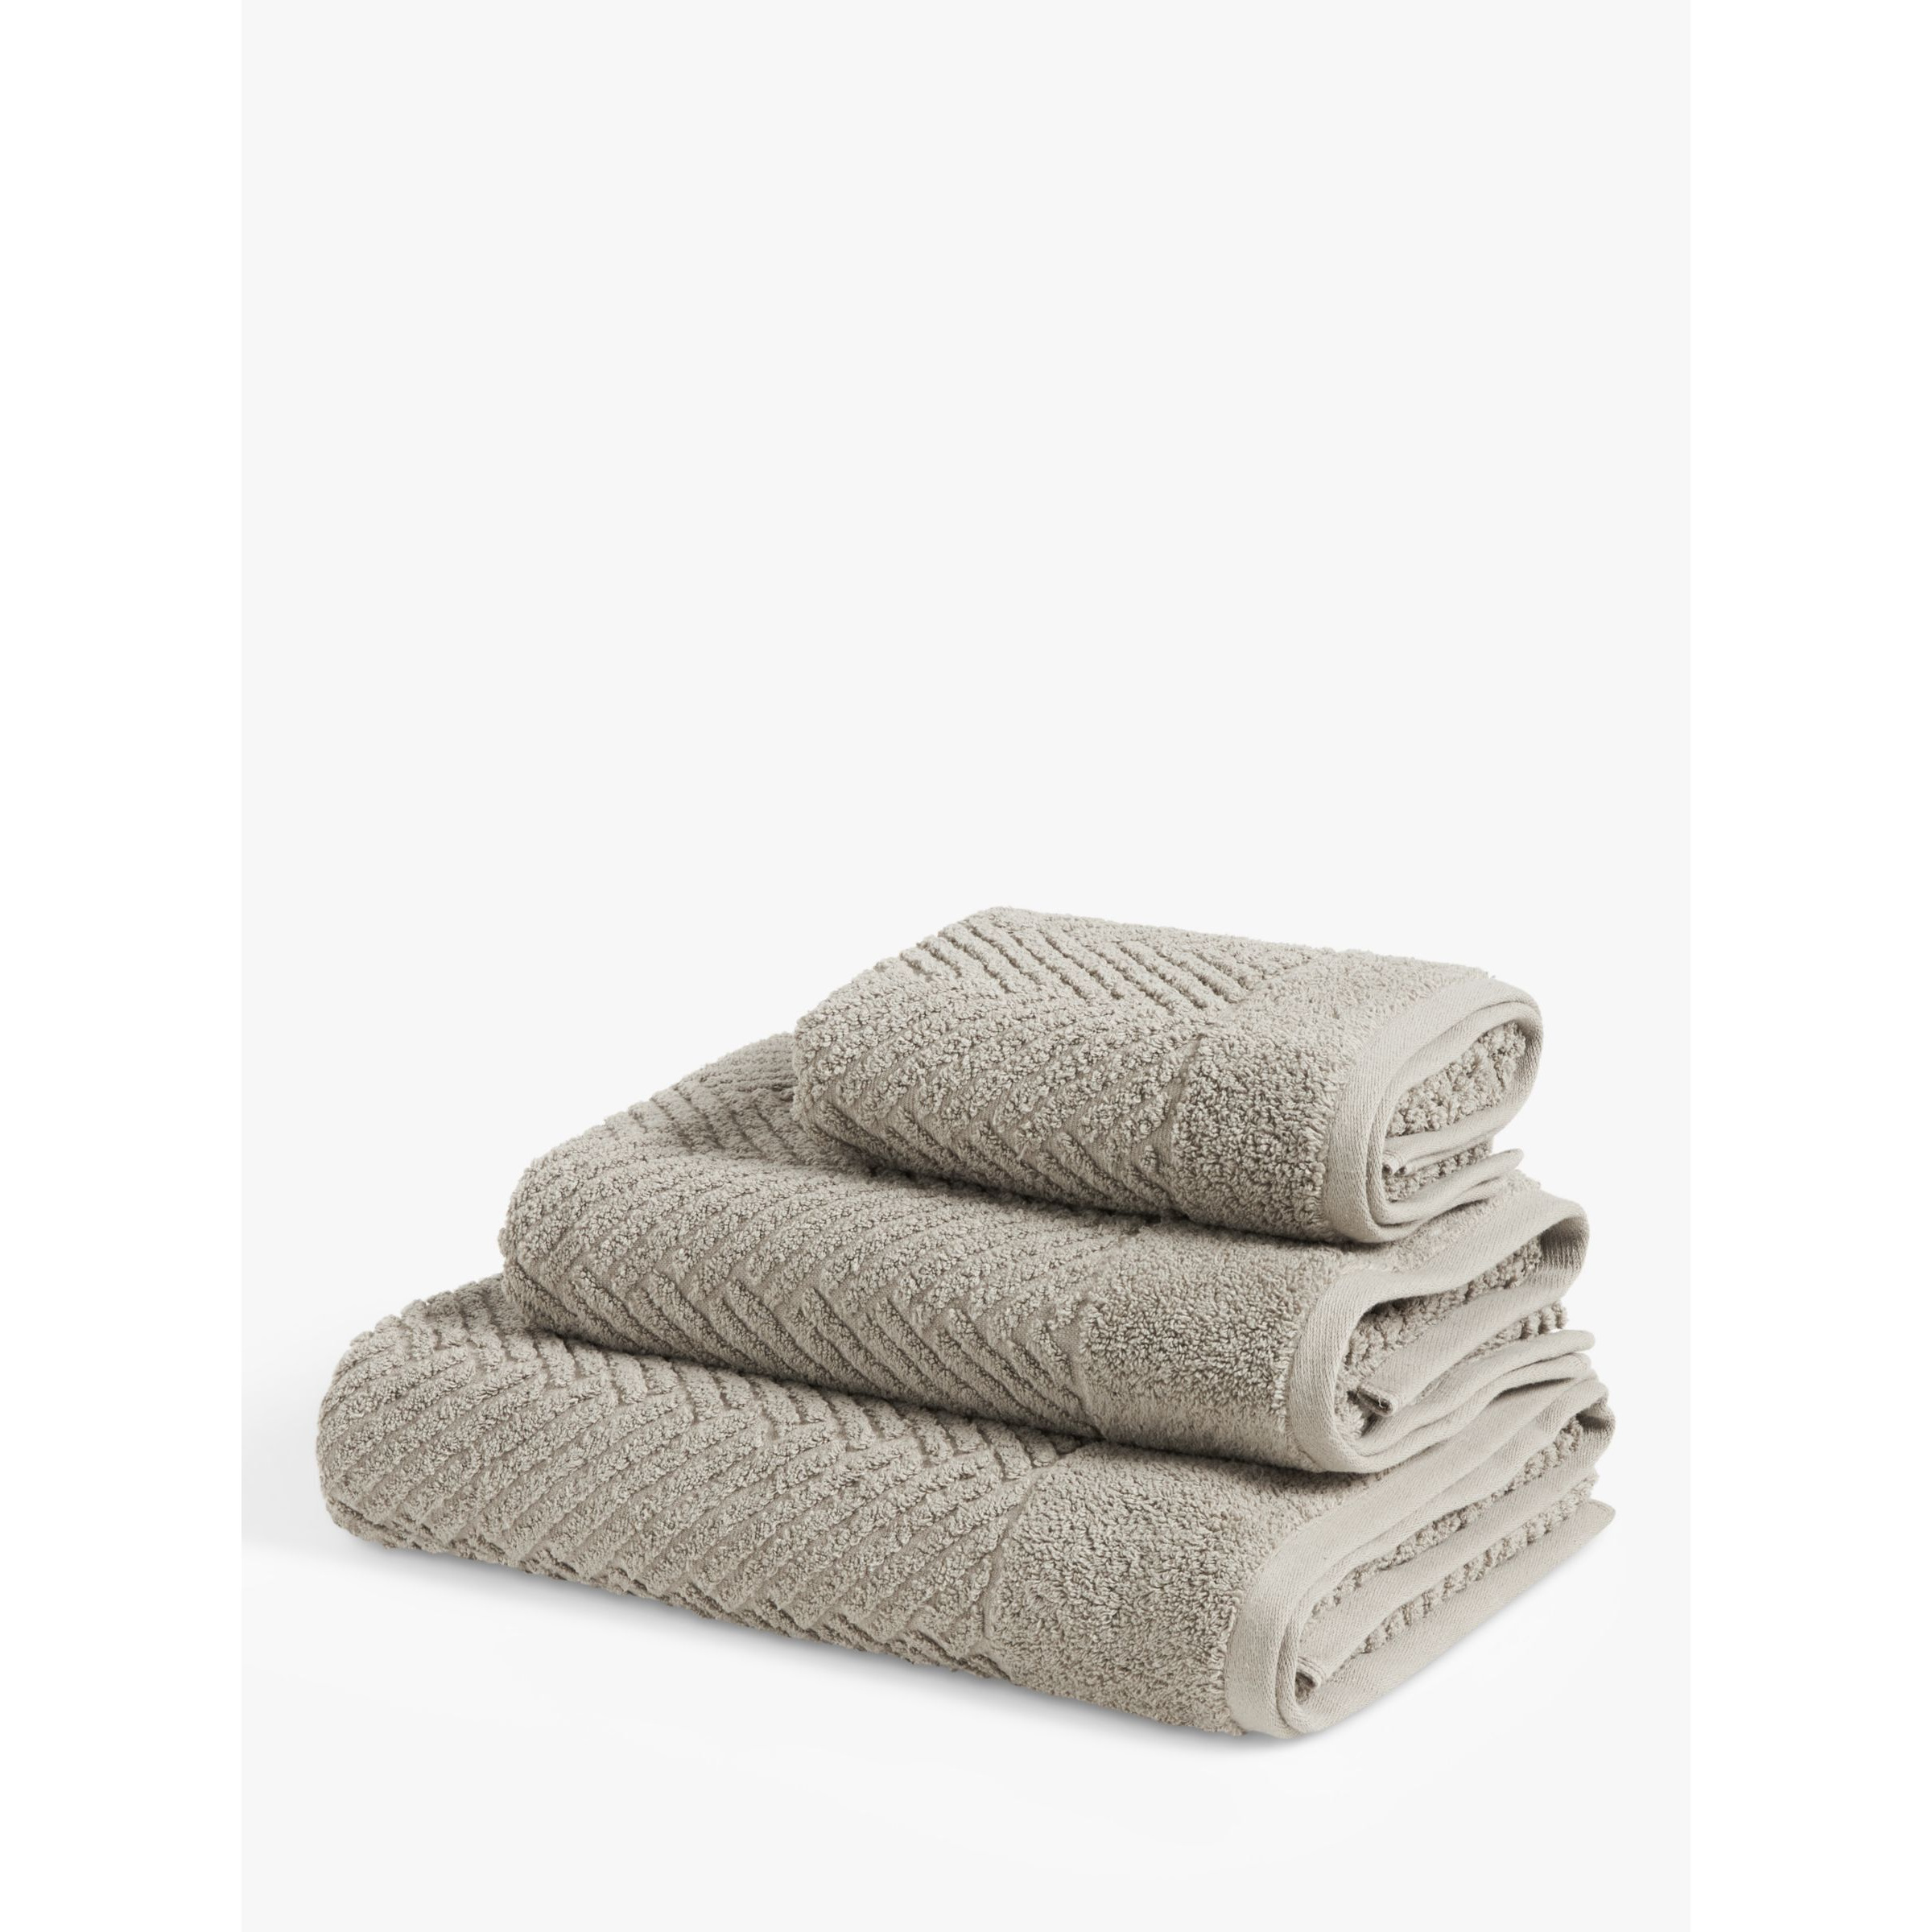 John Lewis Cotton Hemp Towels - image 1